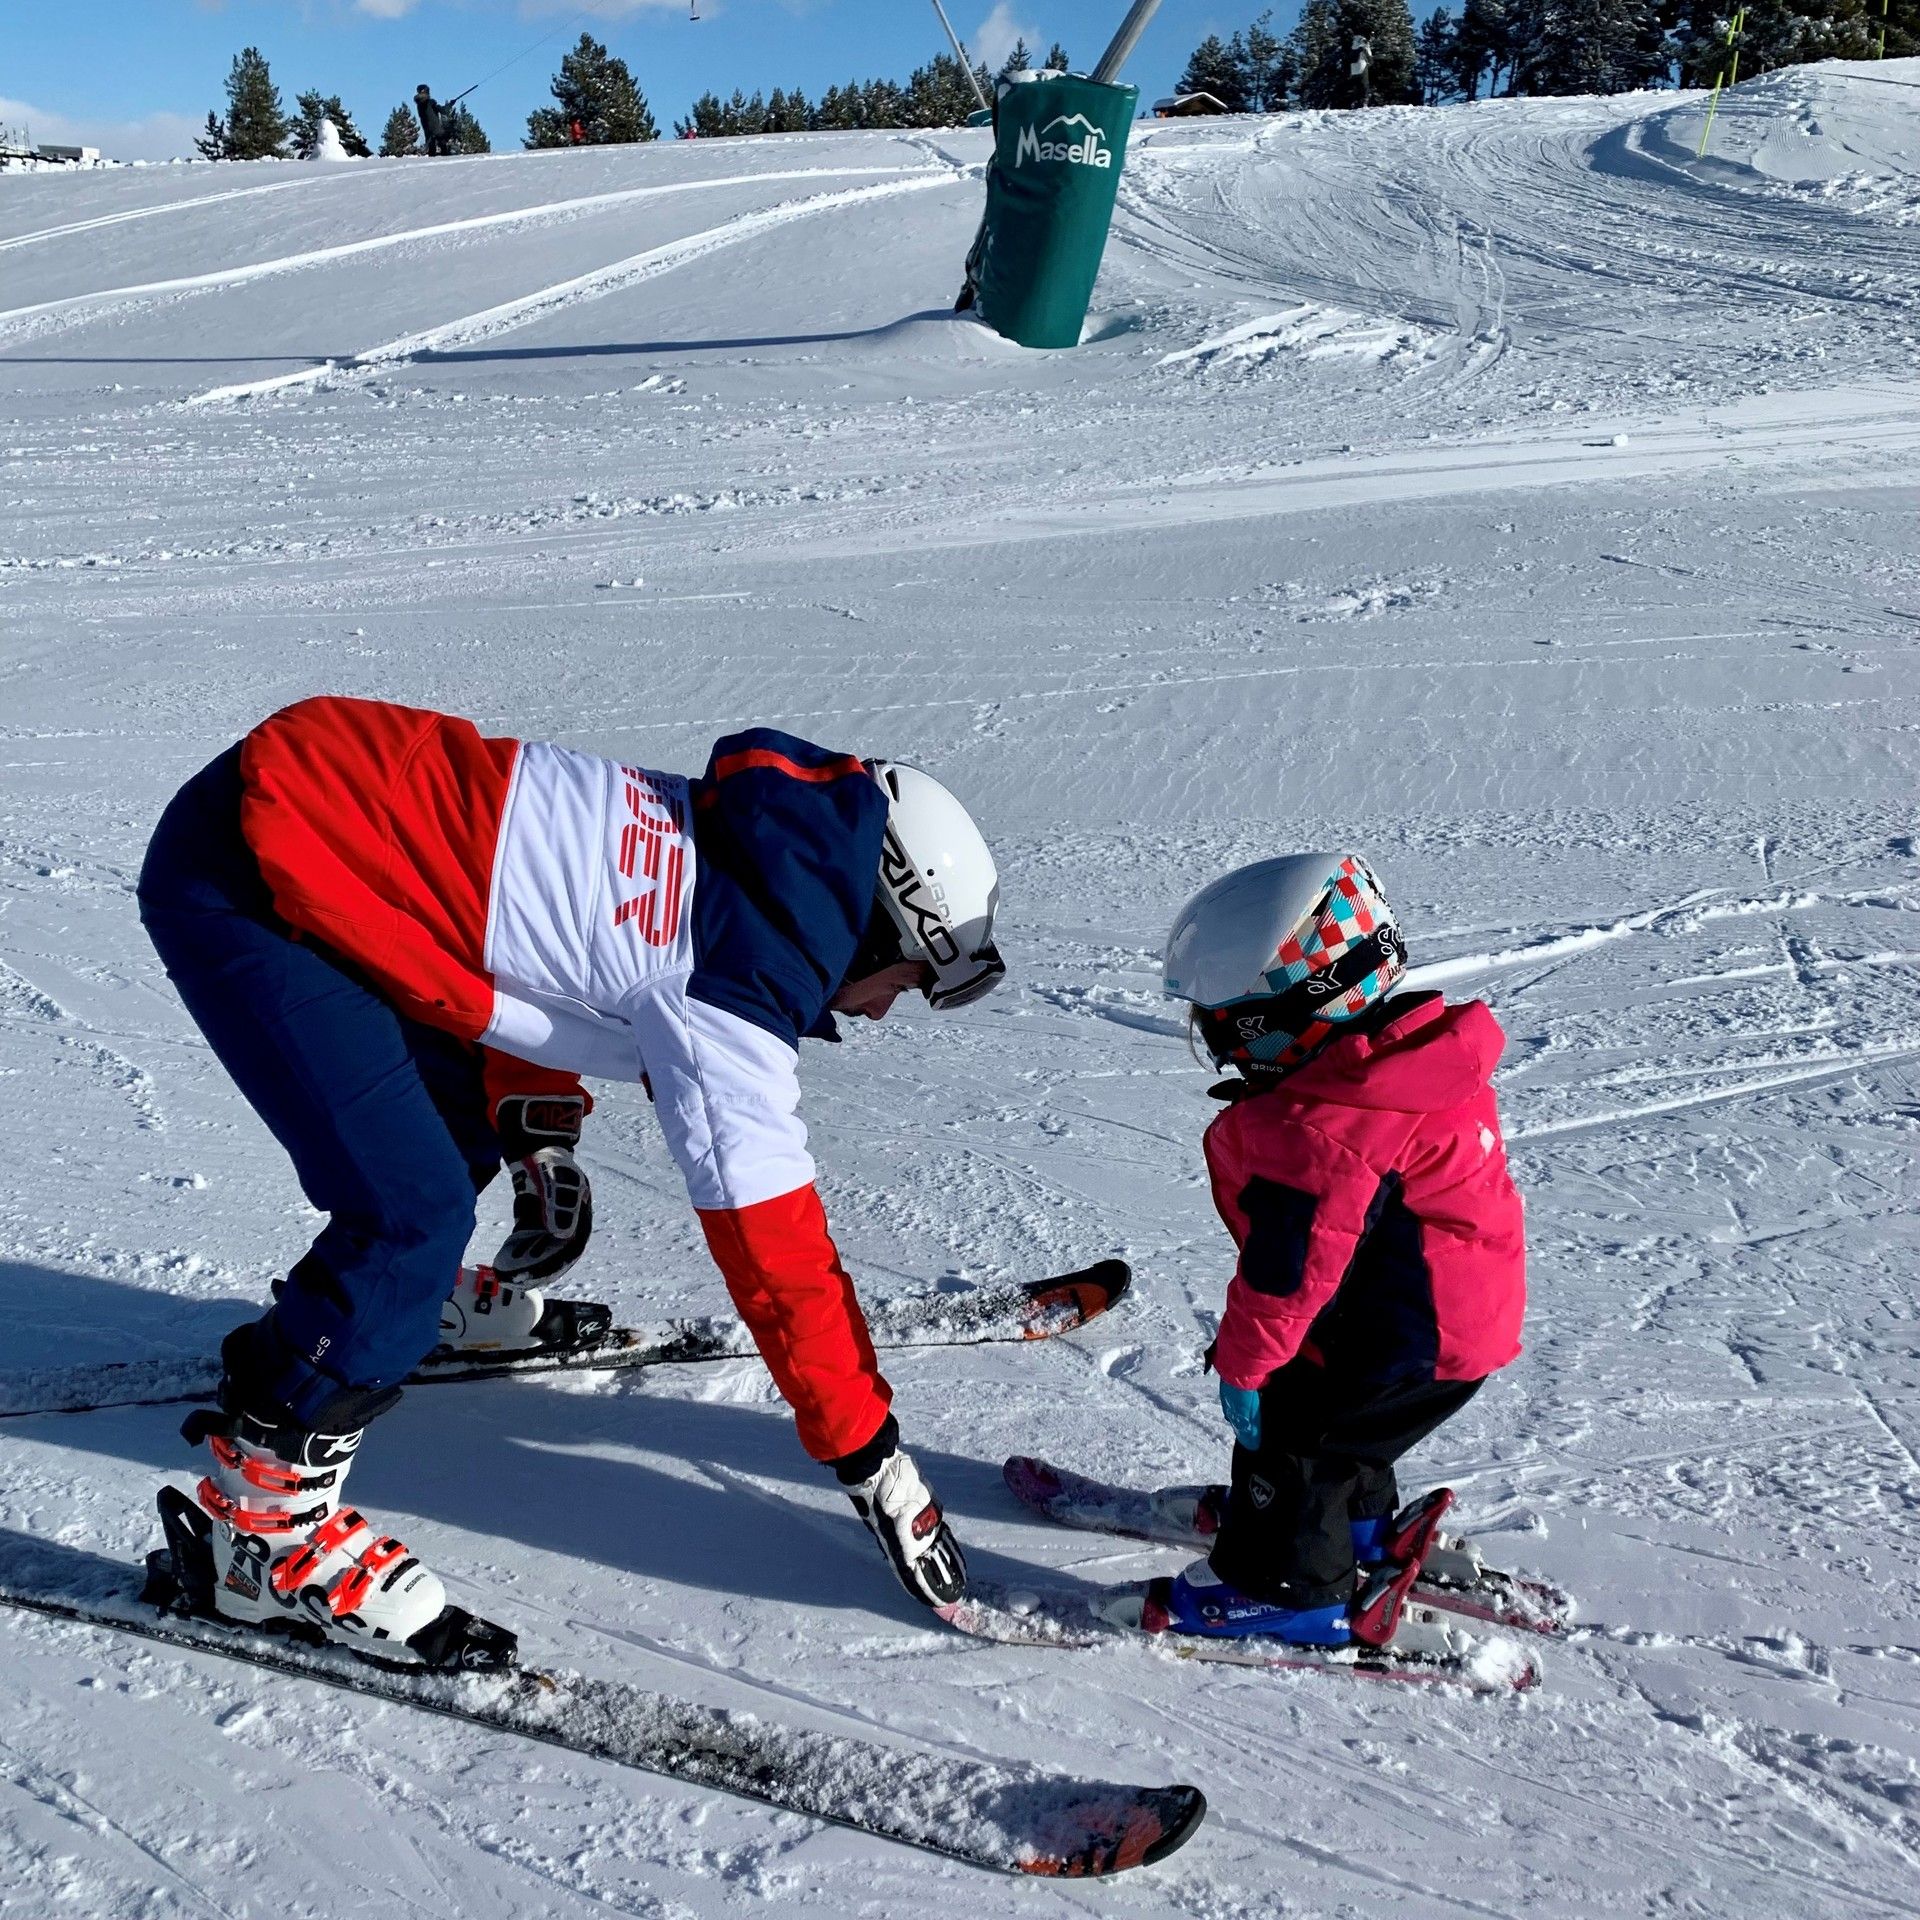 Un consejo para el material de nuestros hijos - Sam Ski Blog - Nevasport.com